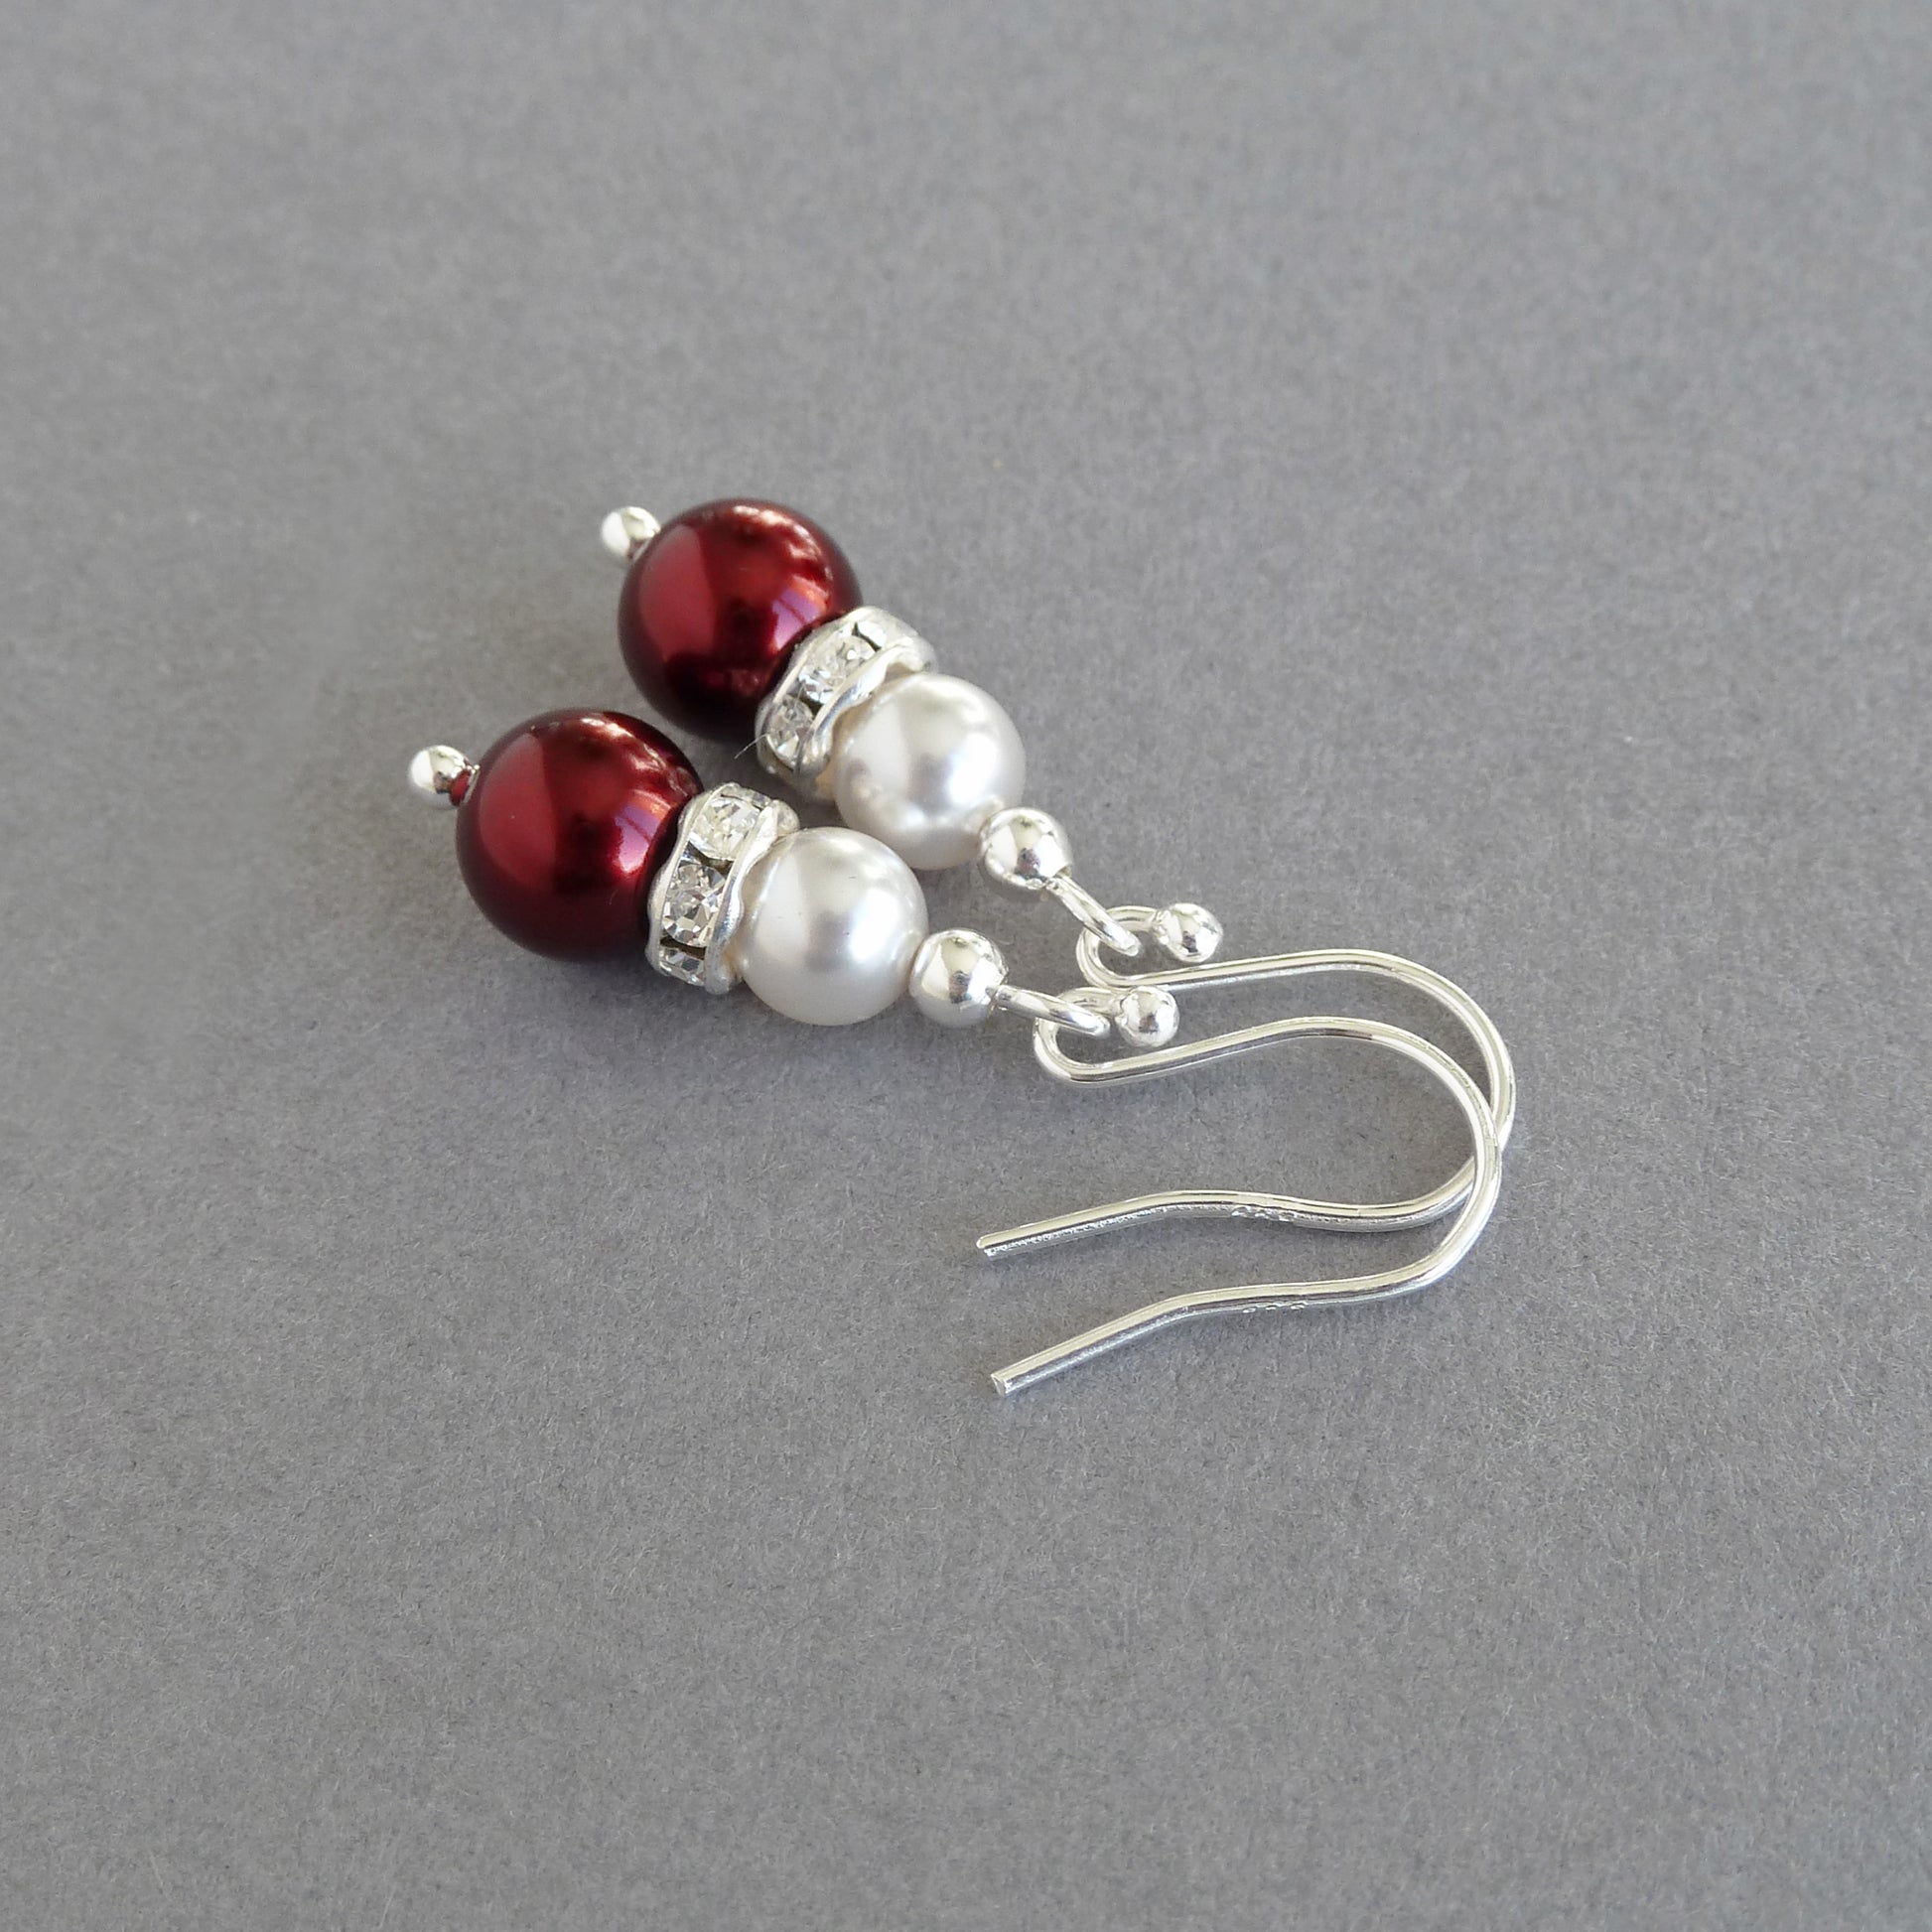 Dark red pearl and crystal earrings